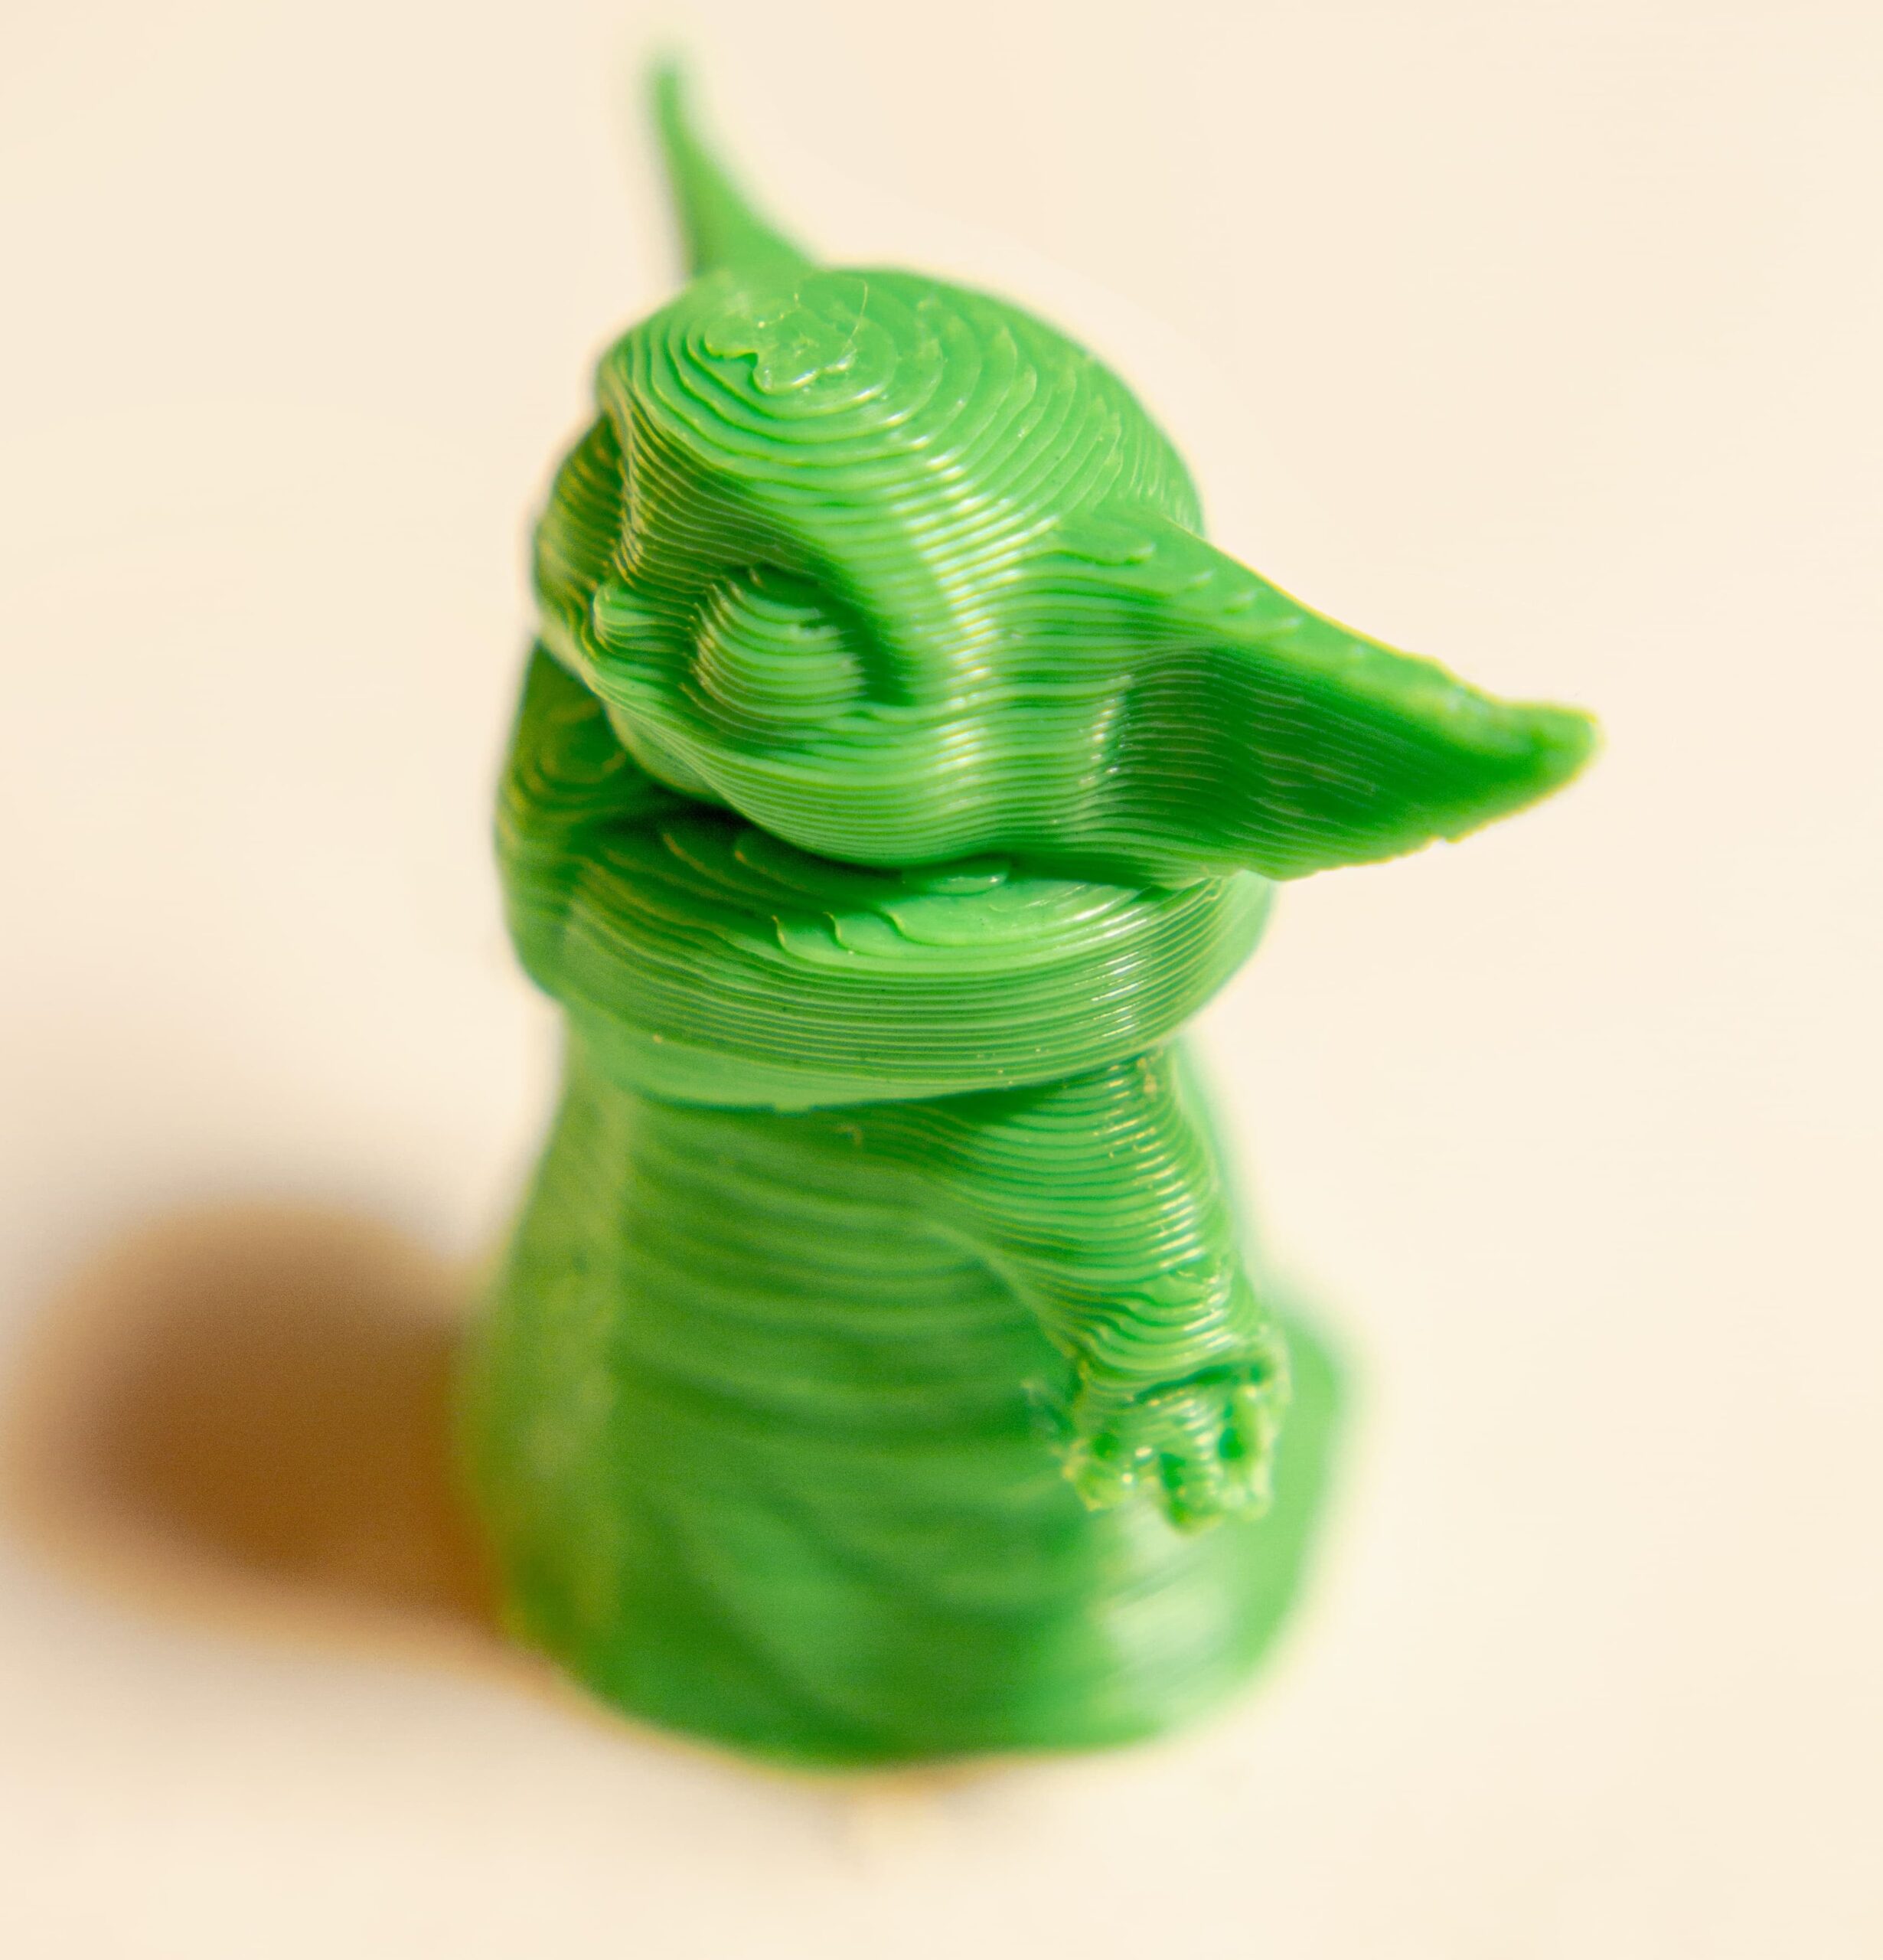 Impresora 3D resina vs filamento, ¿Cual mejor?